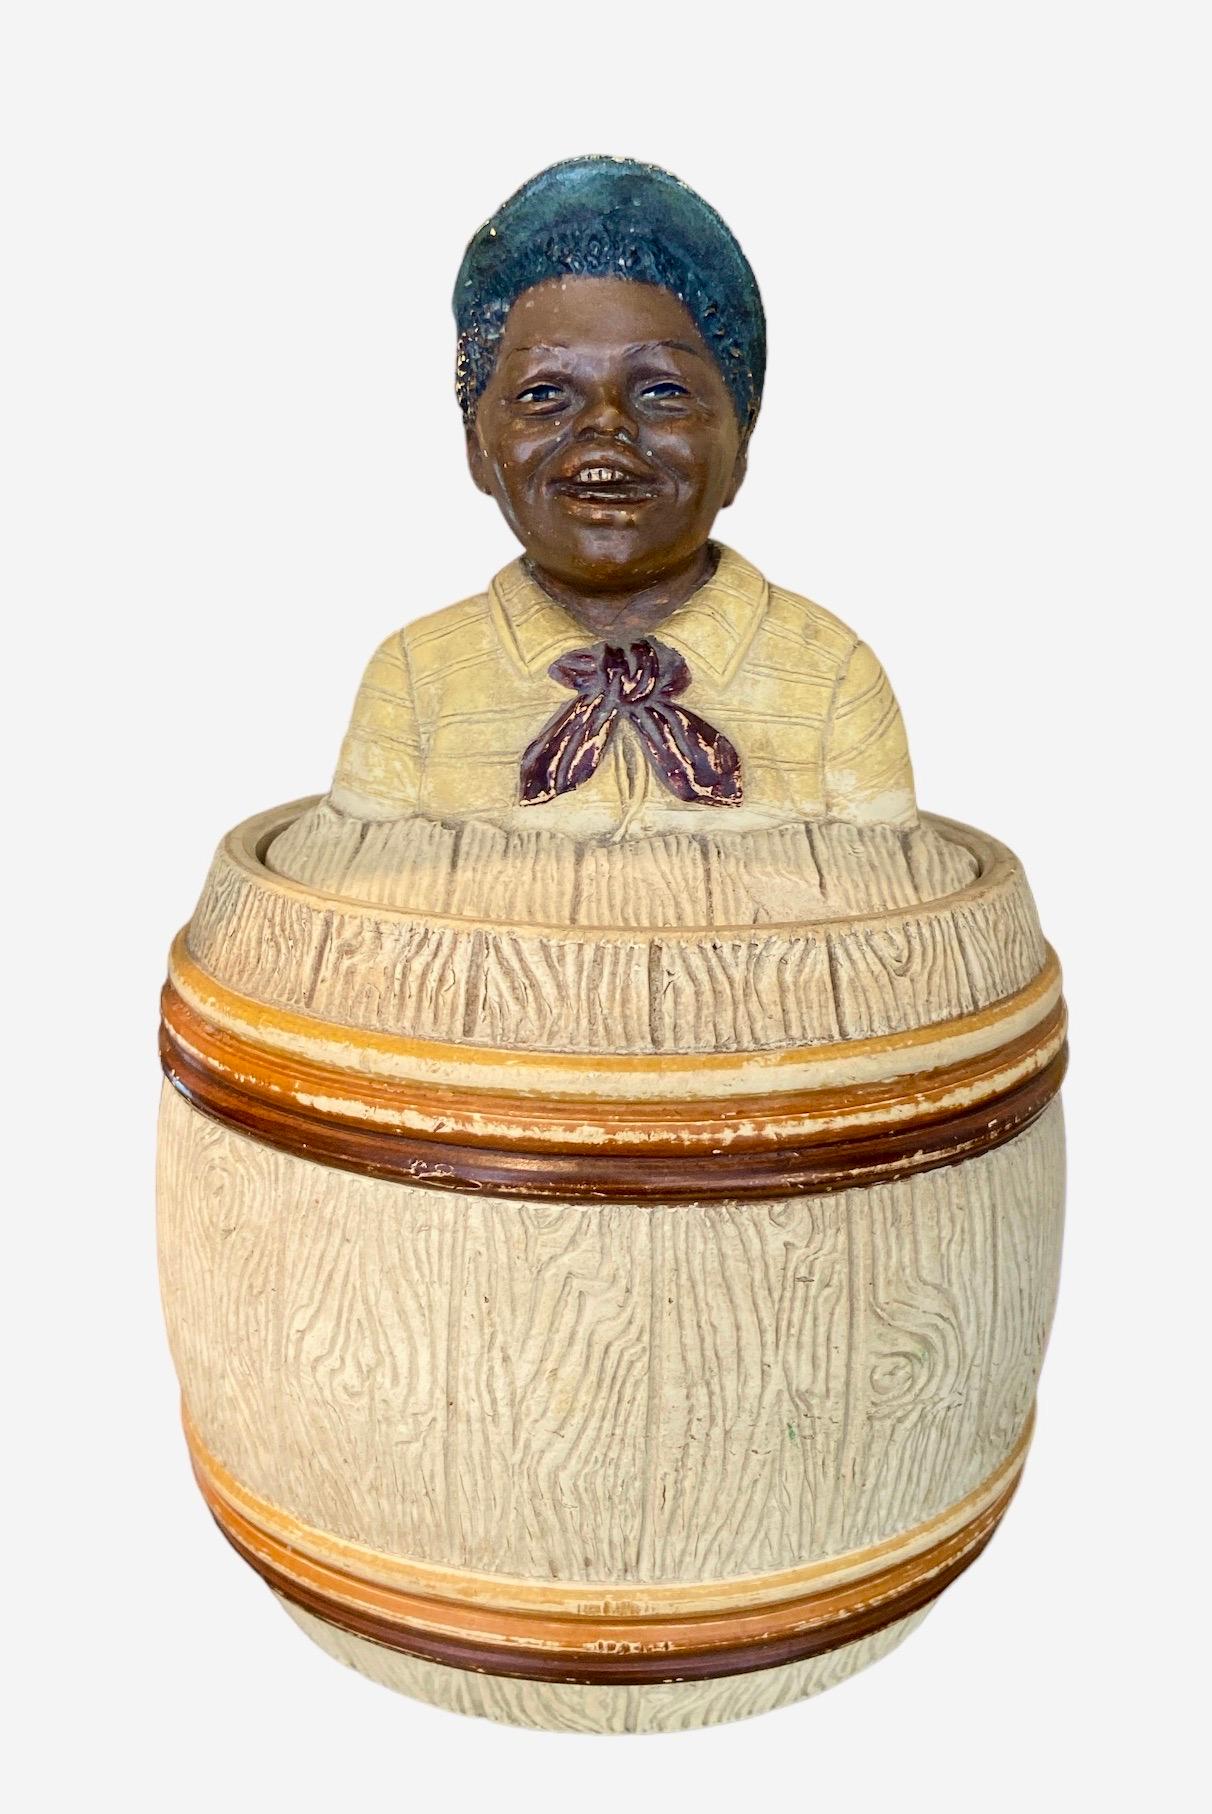 Das Tabaksglas hat die Form eines Holzfasses mit einem lächelnden kleinen Jungen darauf. Handbemalte Terrakotta. Höhe: 18 cm. Durchmesser: 12 cm.